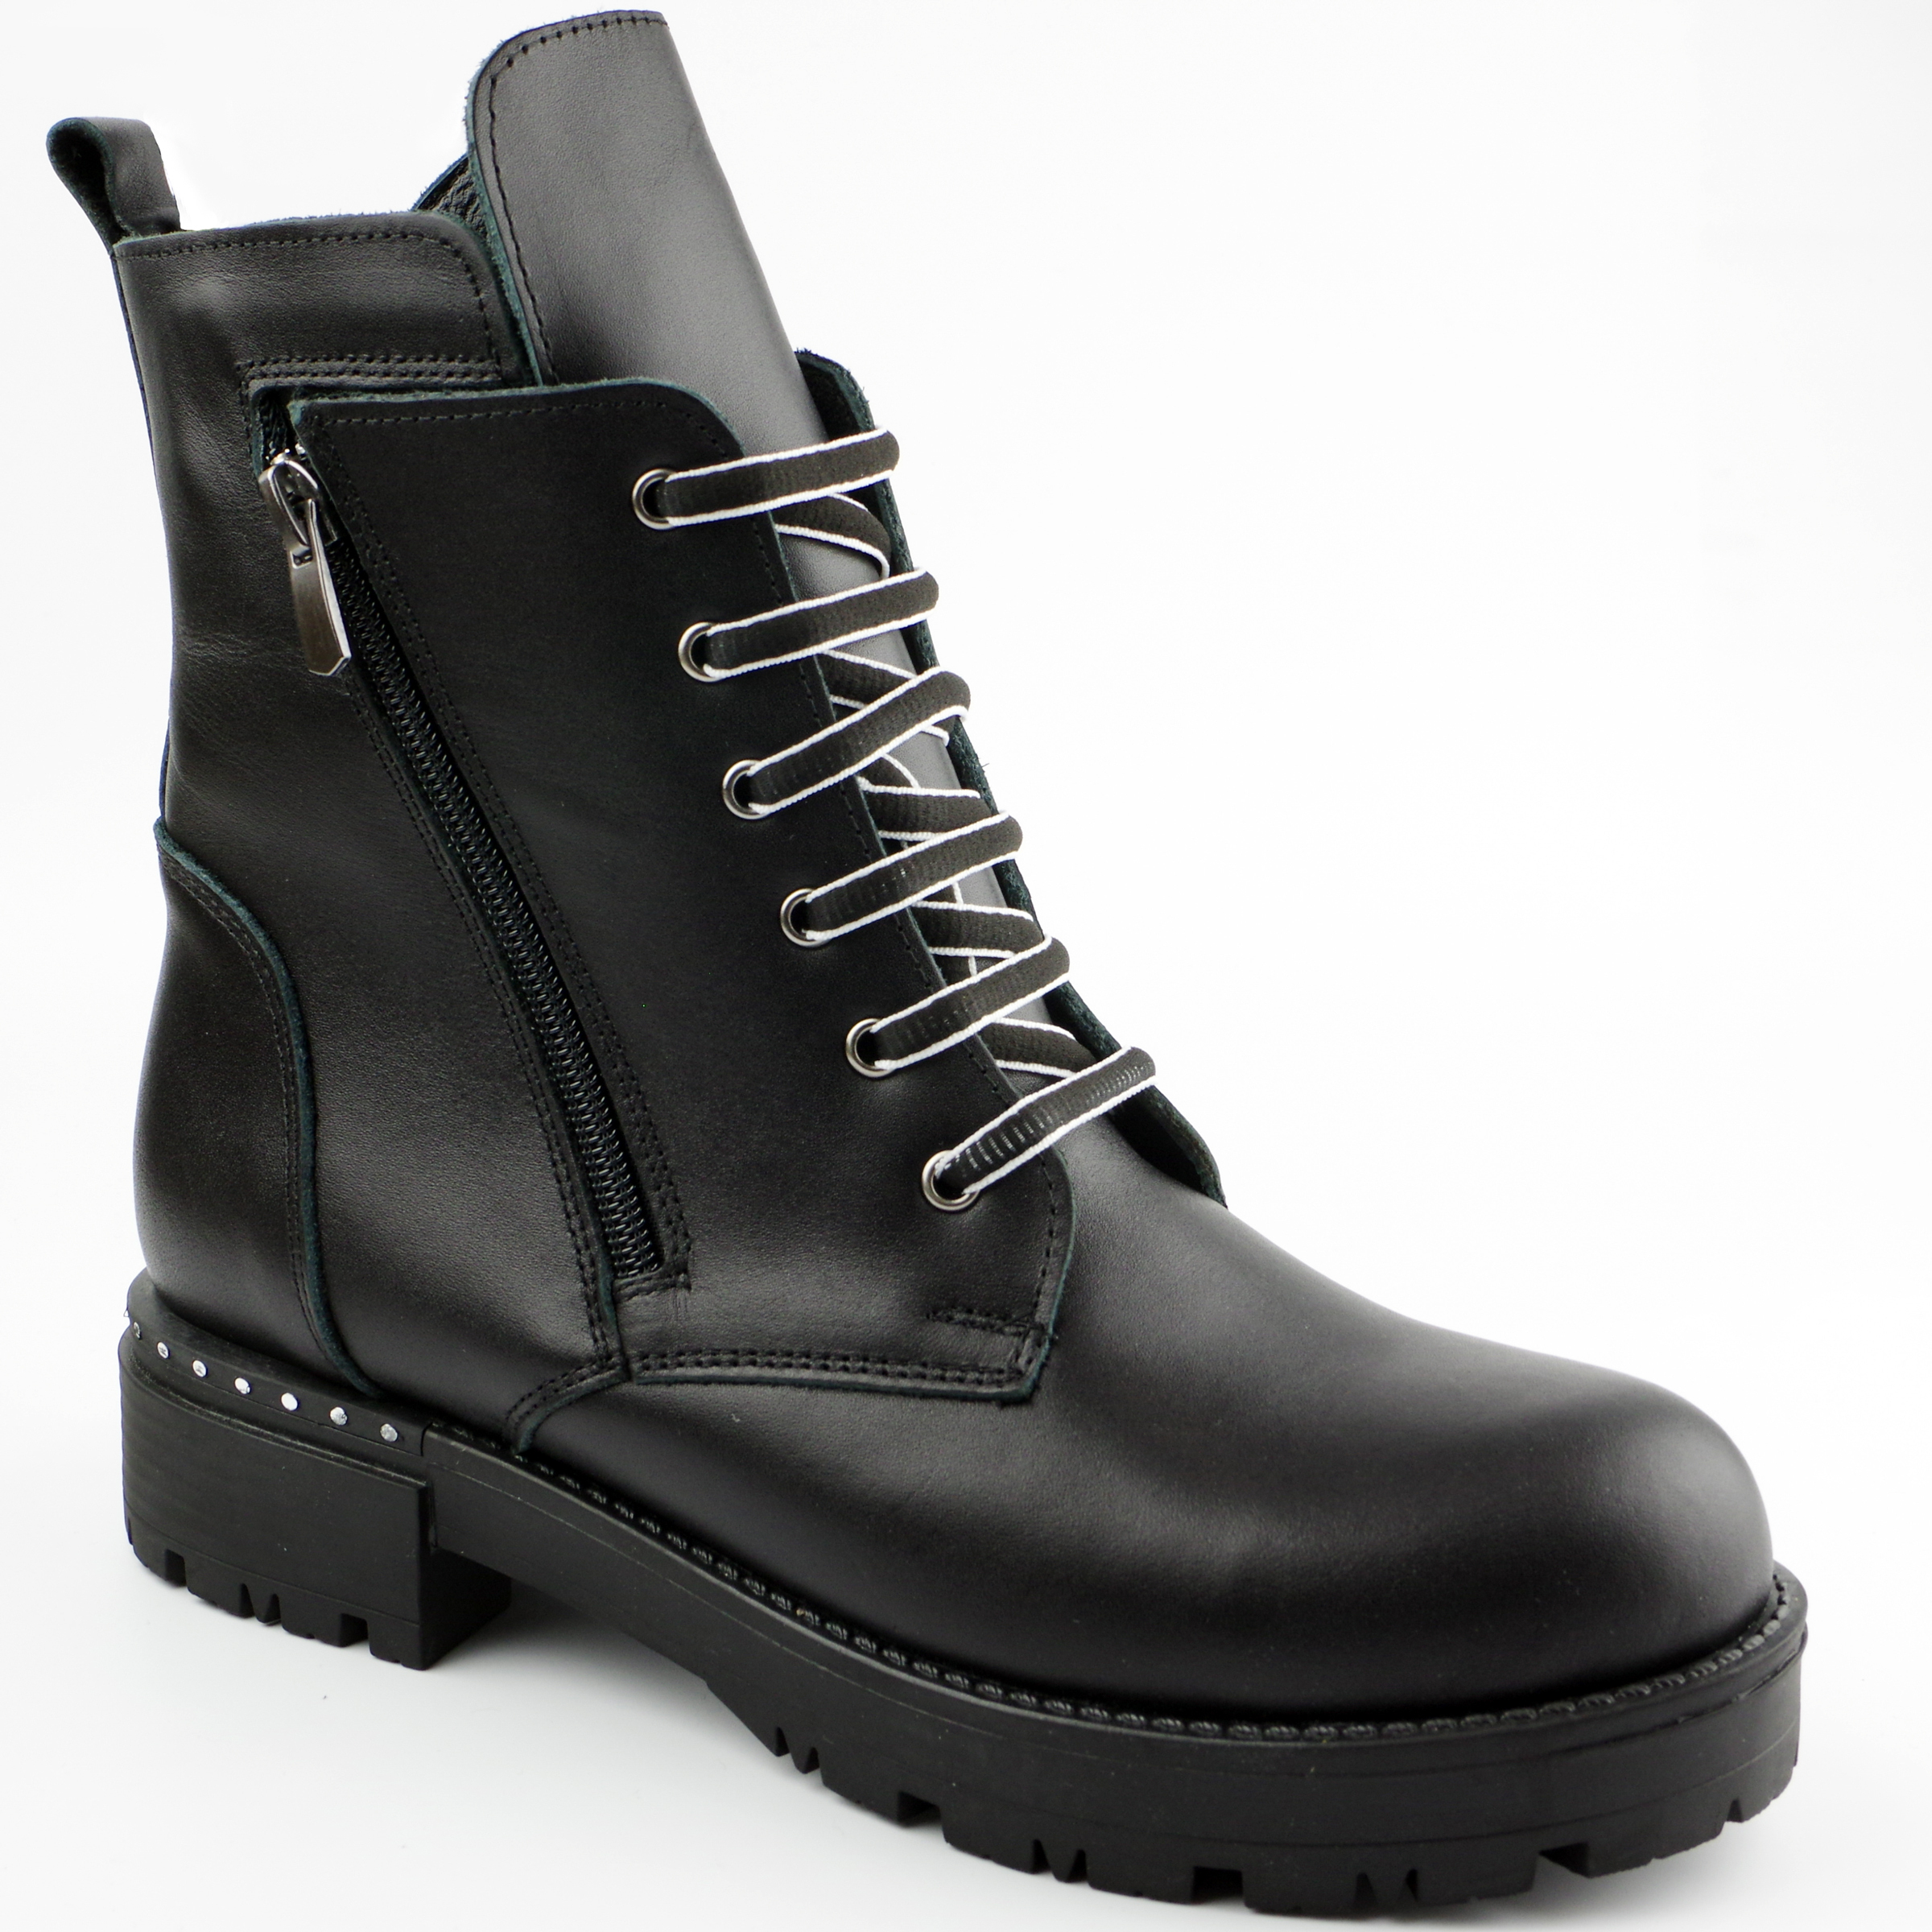 Демисезонные ботинки для подростков (2125) материал Натуральная кожа, цвет Черный  для девочки 37-39 размеры – Sole Kids. Фото 1